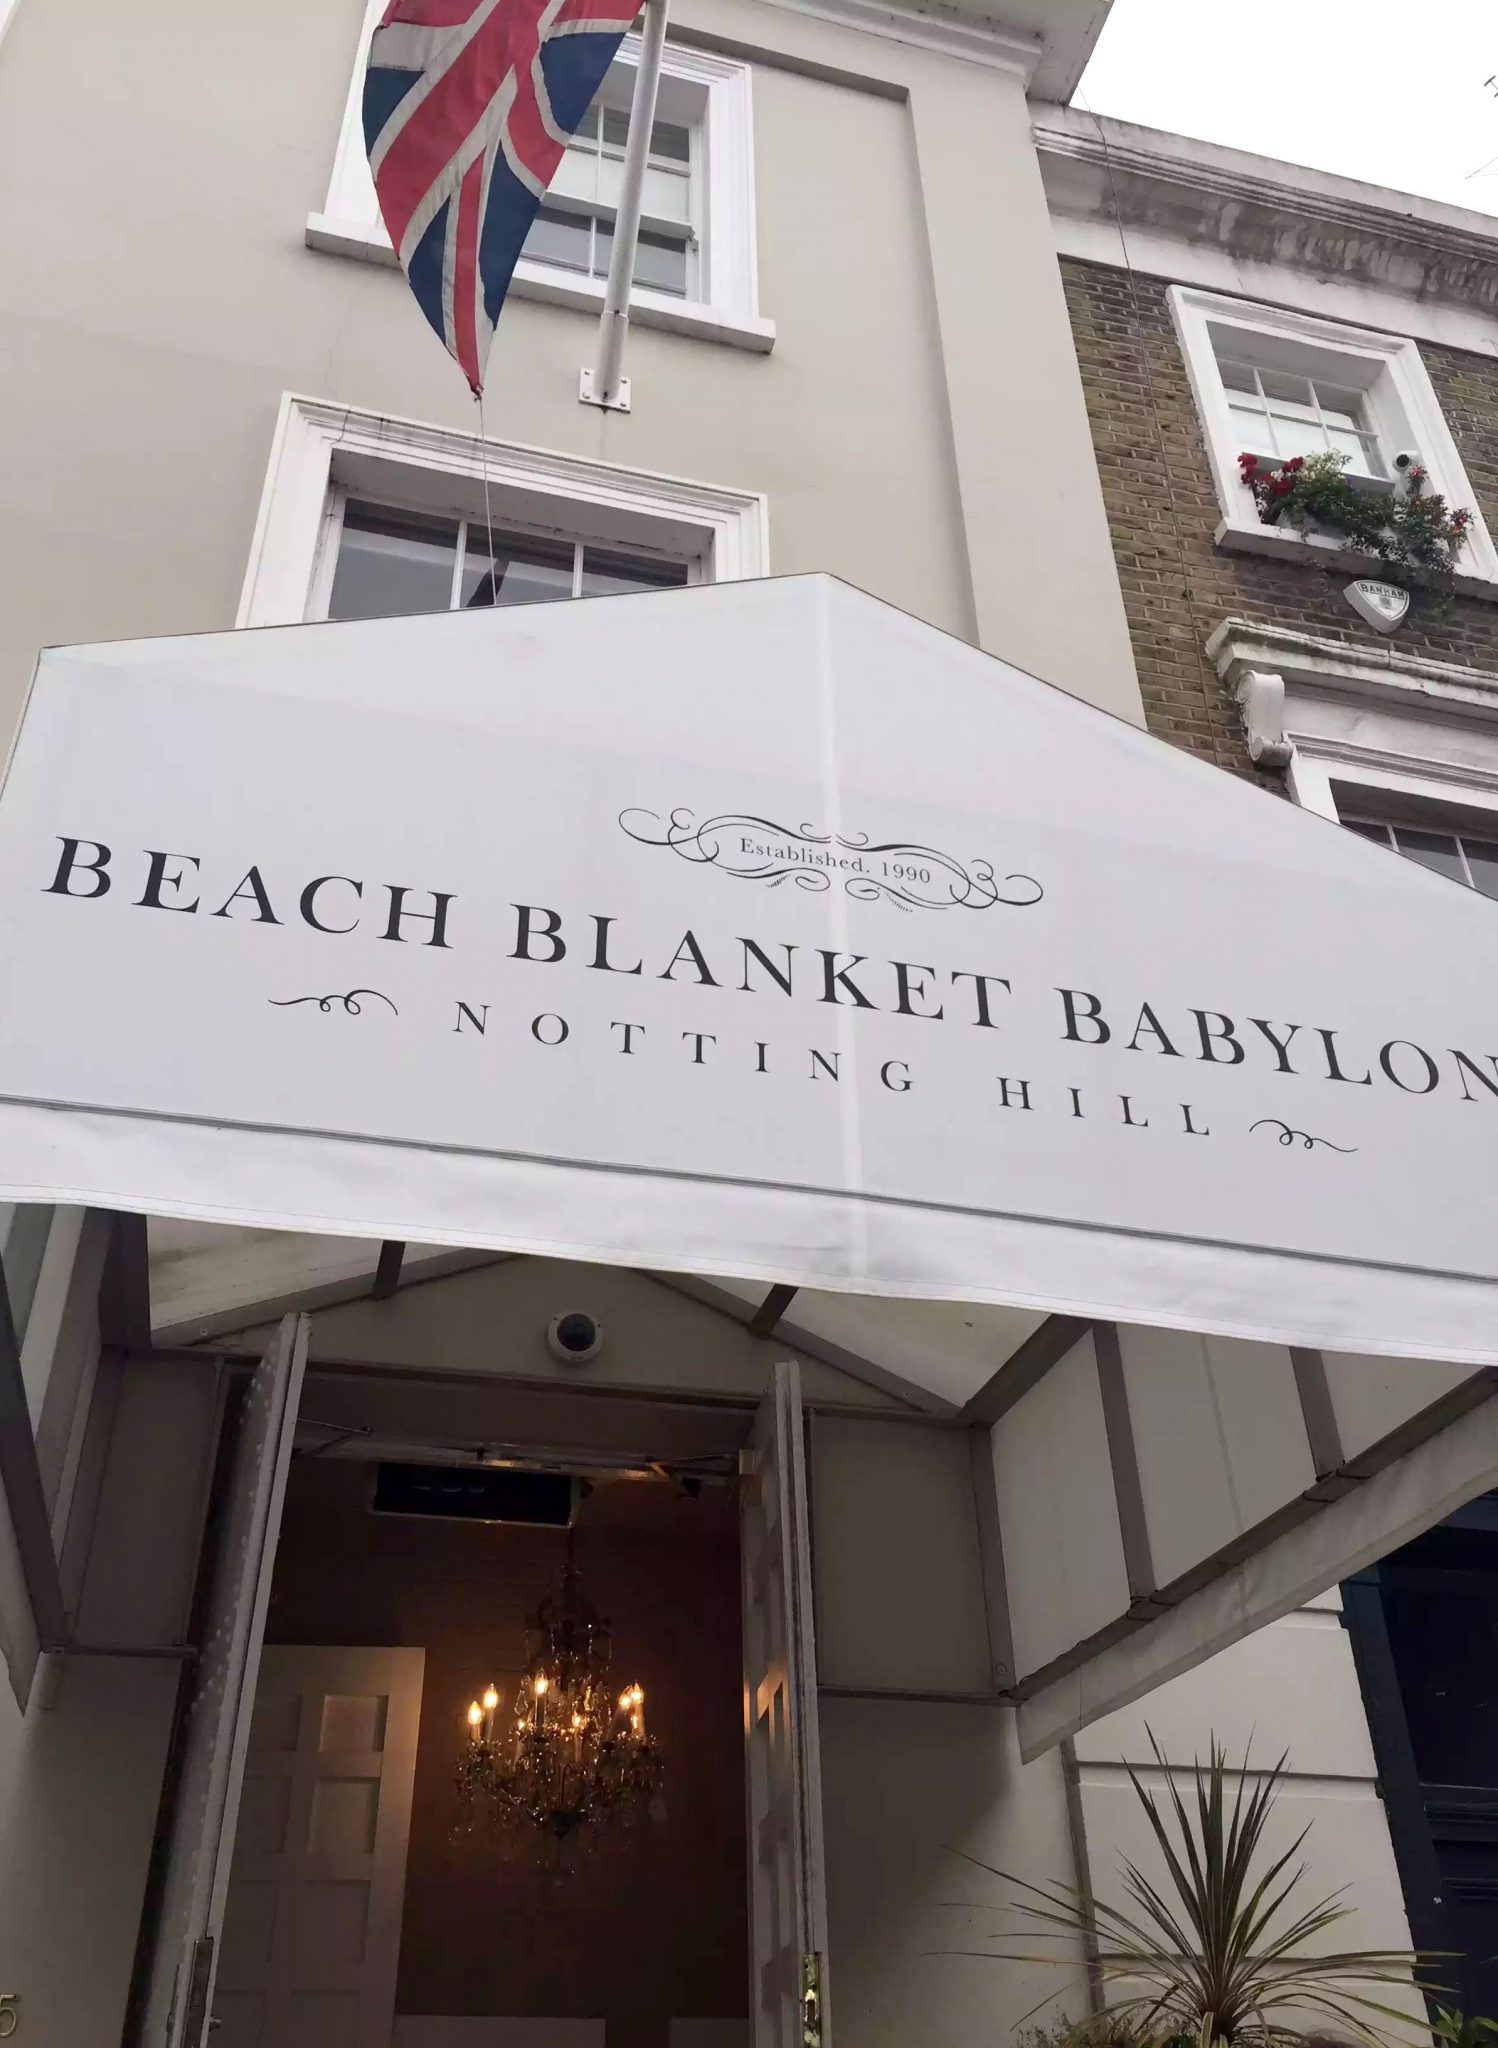 A Beach Blanket Babylon Birthday, Notting Hill